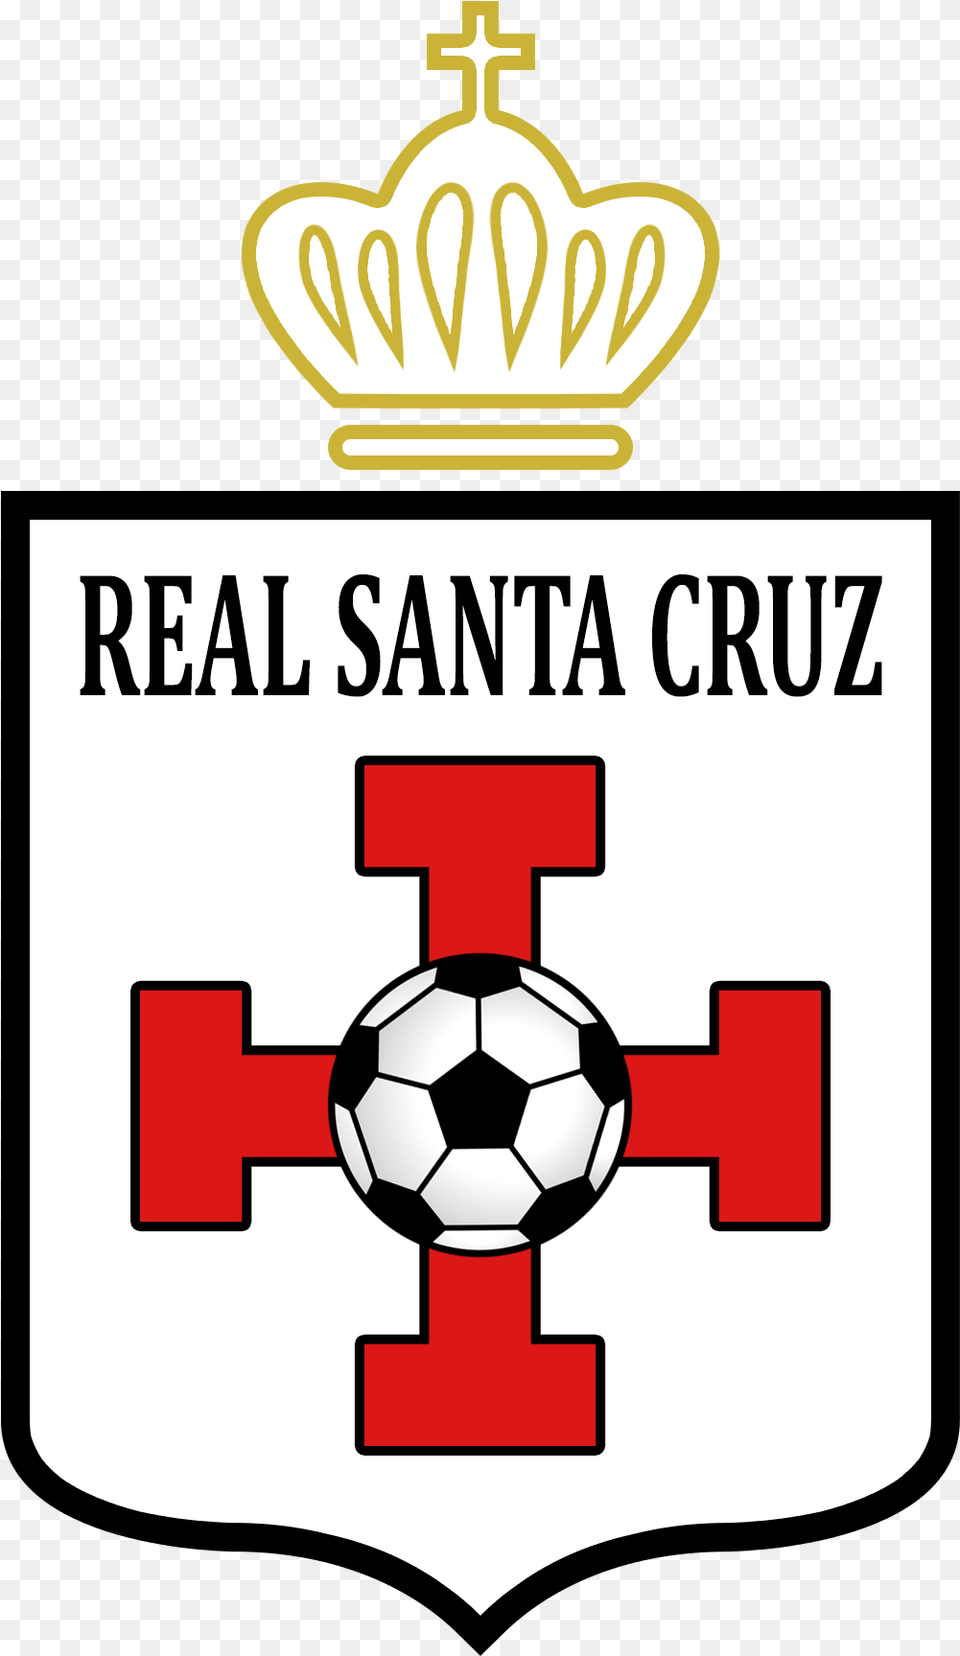 Escudo Club Real Santa Cruz Real Santa Cruz, Logo, Ball, Football, Soccer Free Png